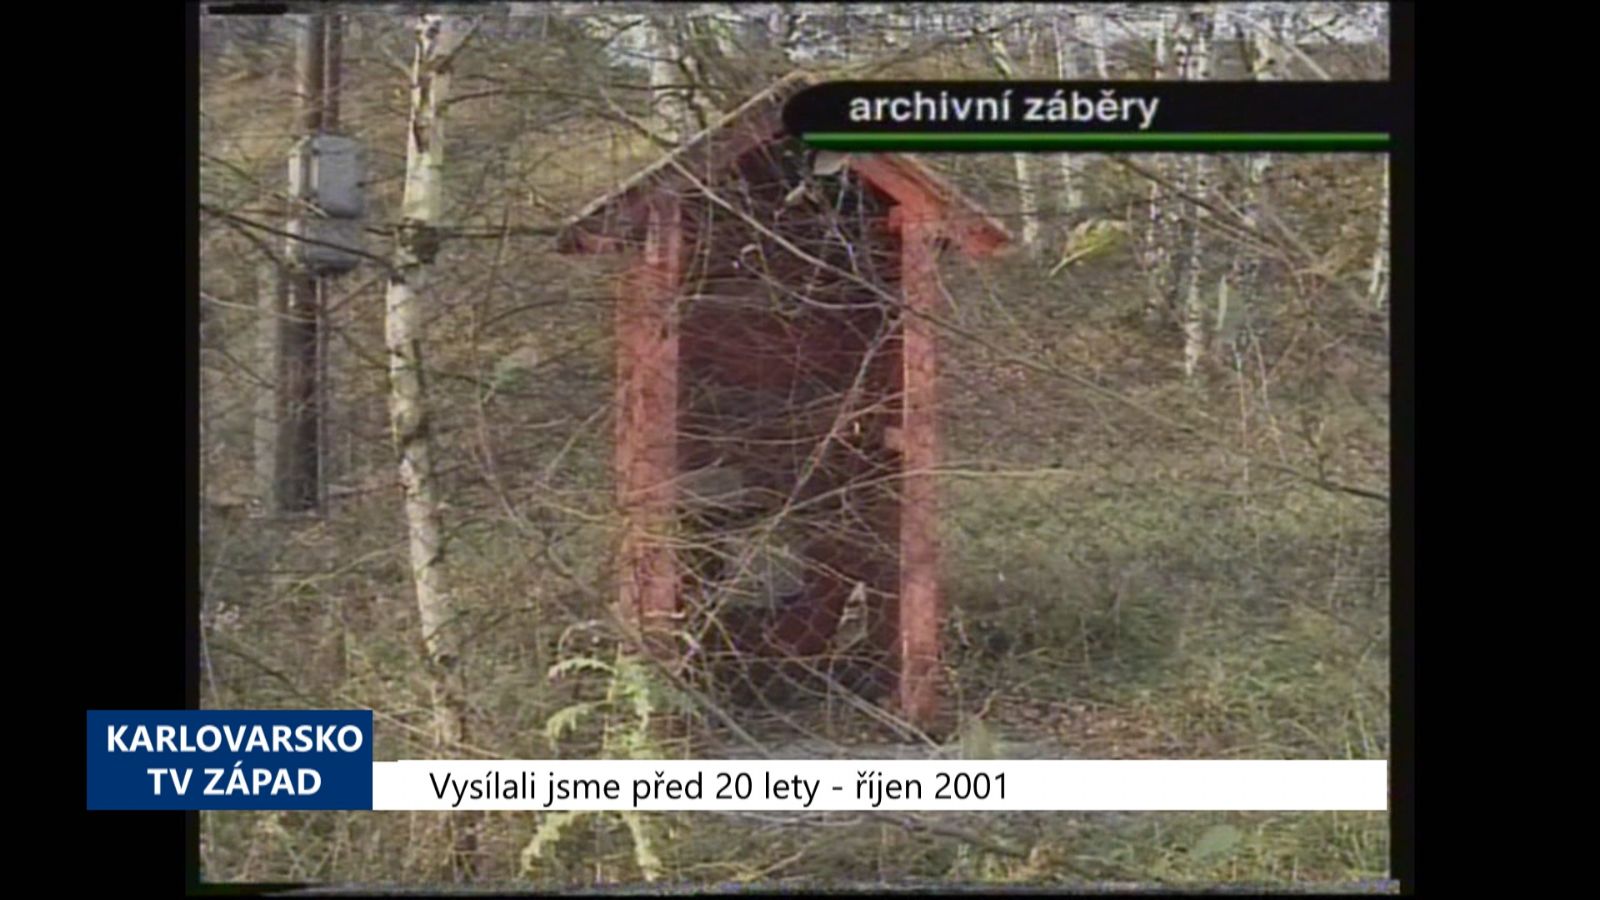 2001 – Sokolov: Vznik průmyslové zóny se komplikuje (TV Západ)